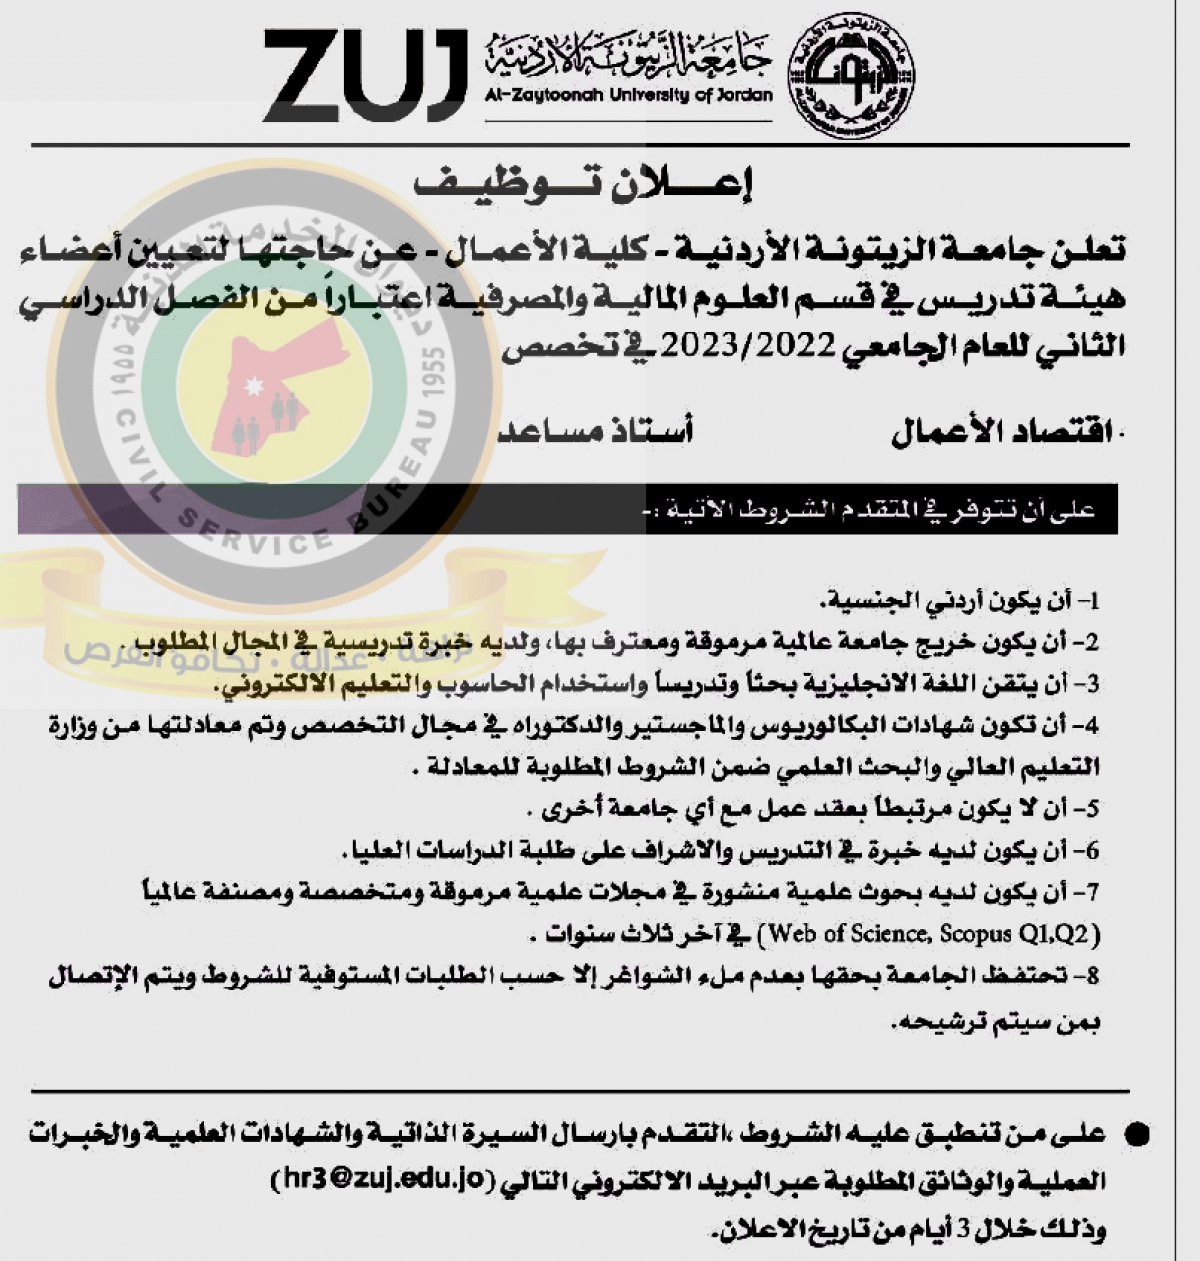 اعلان تعيين اعضاء هيئة تدريس صادر عن جامعة الزيتونة الاردنية